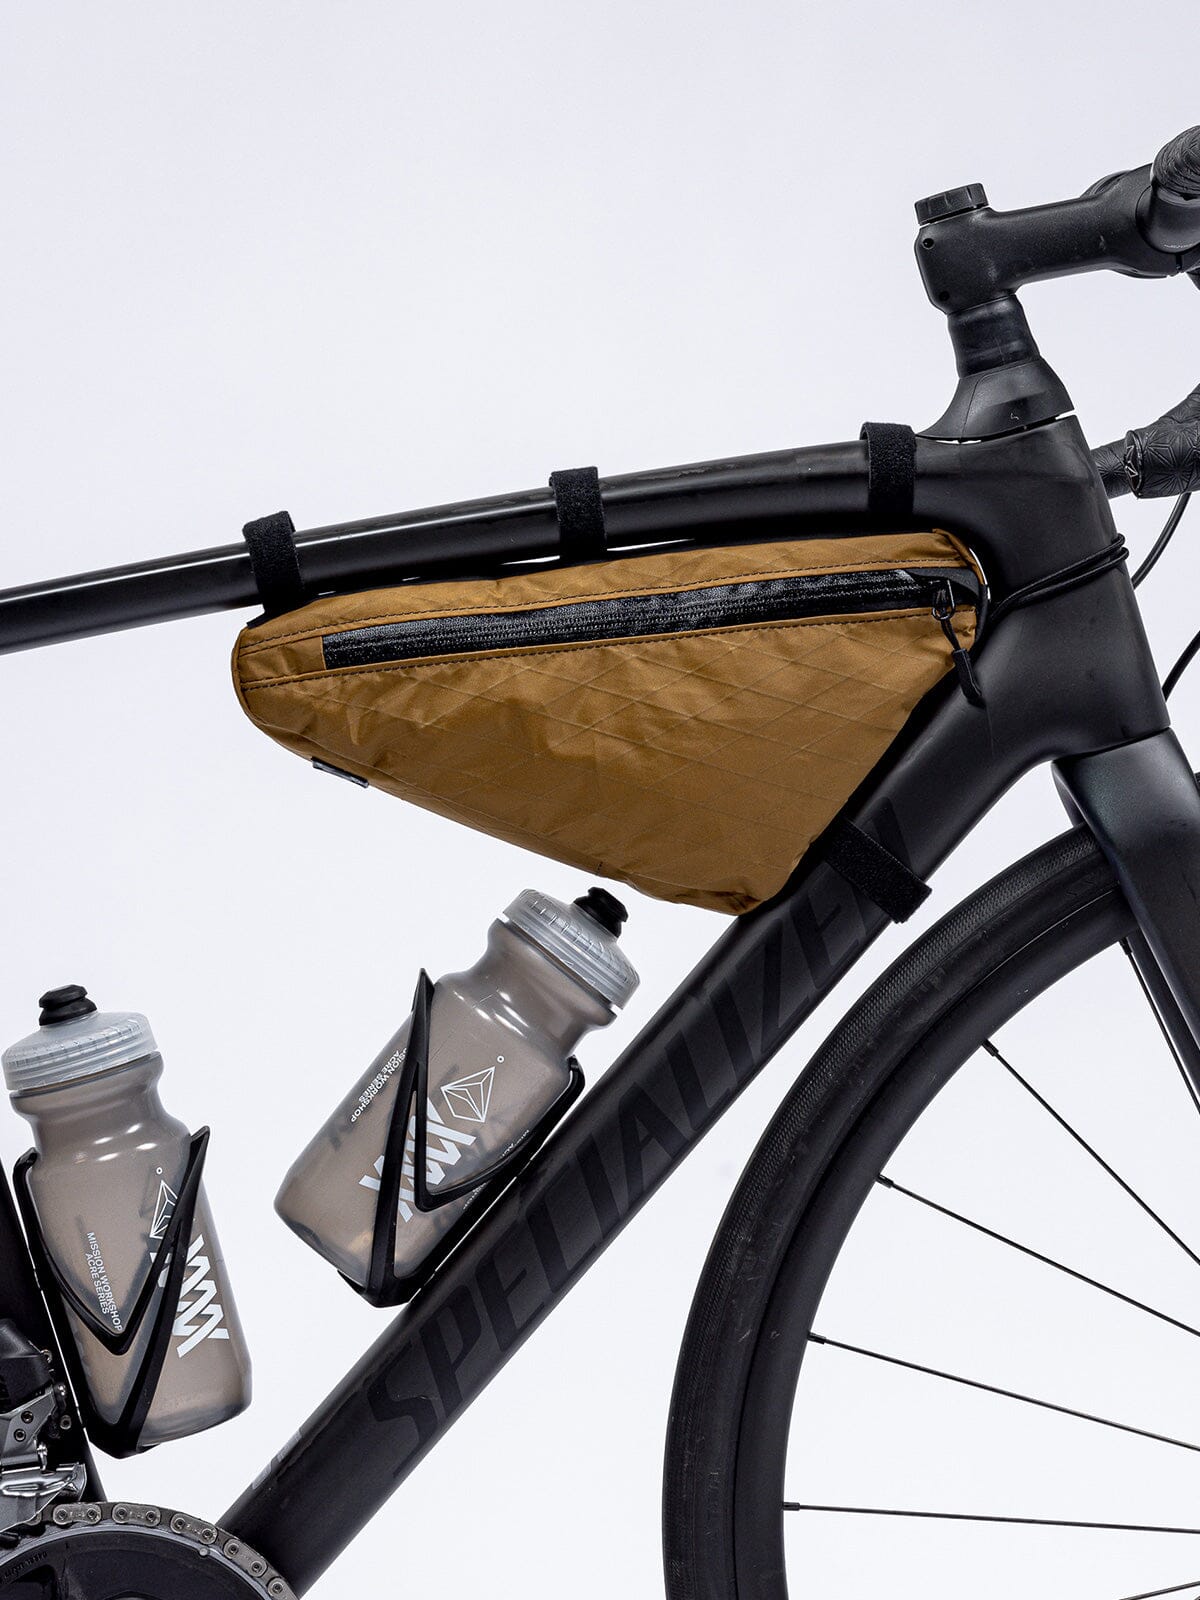 Slice Frame Bag von Mission Workshop - Wetterfeste Taschen & Technische Bekleidung - San Francisco & Los Angeles - Für die Ewigkeit gebaut - Garantiert